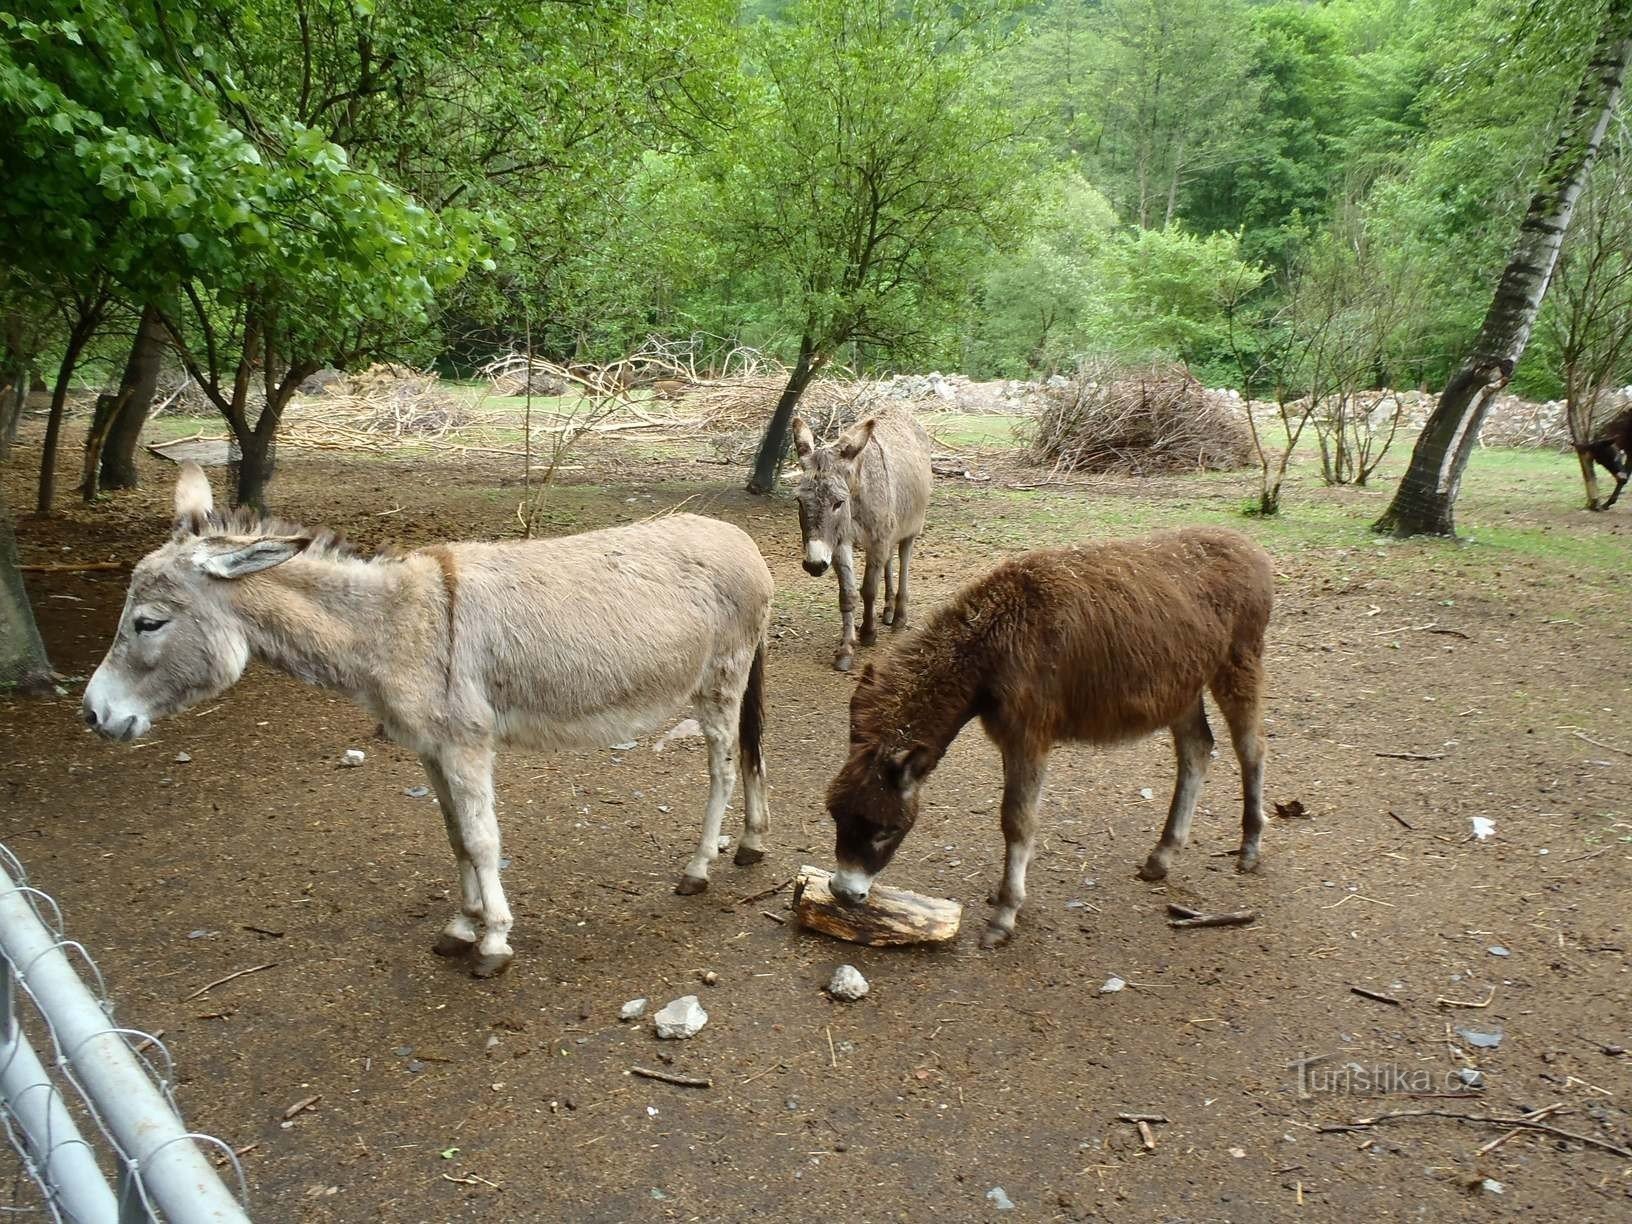 Granja de burros - 12.5.2012